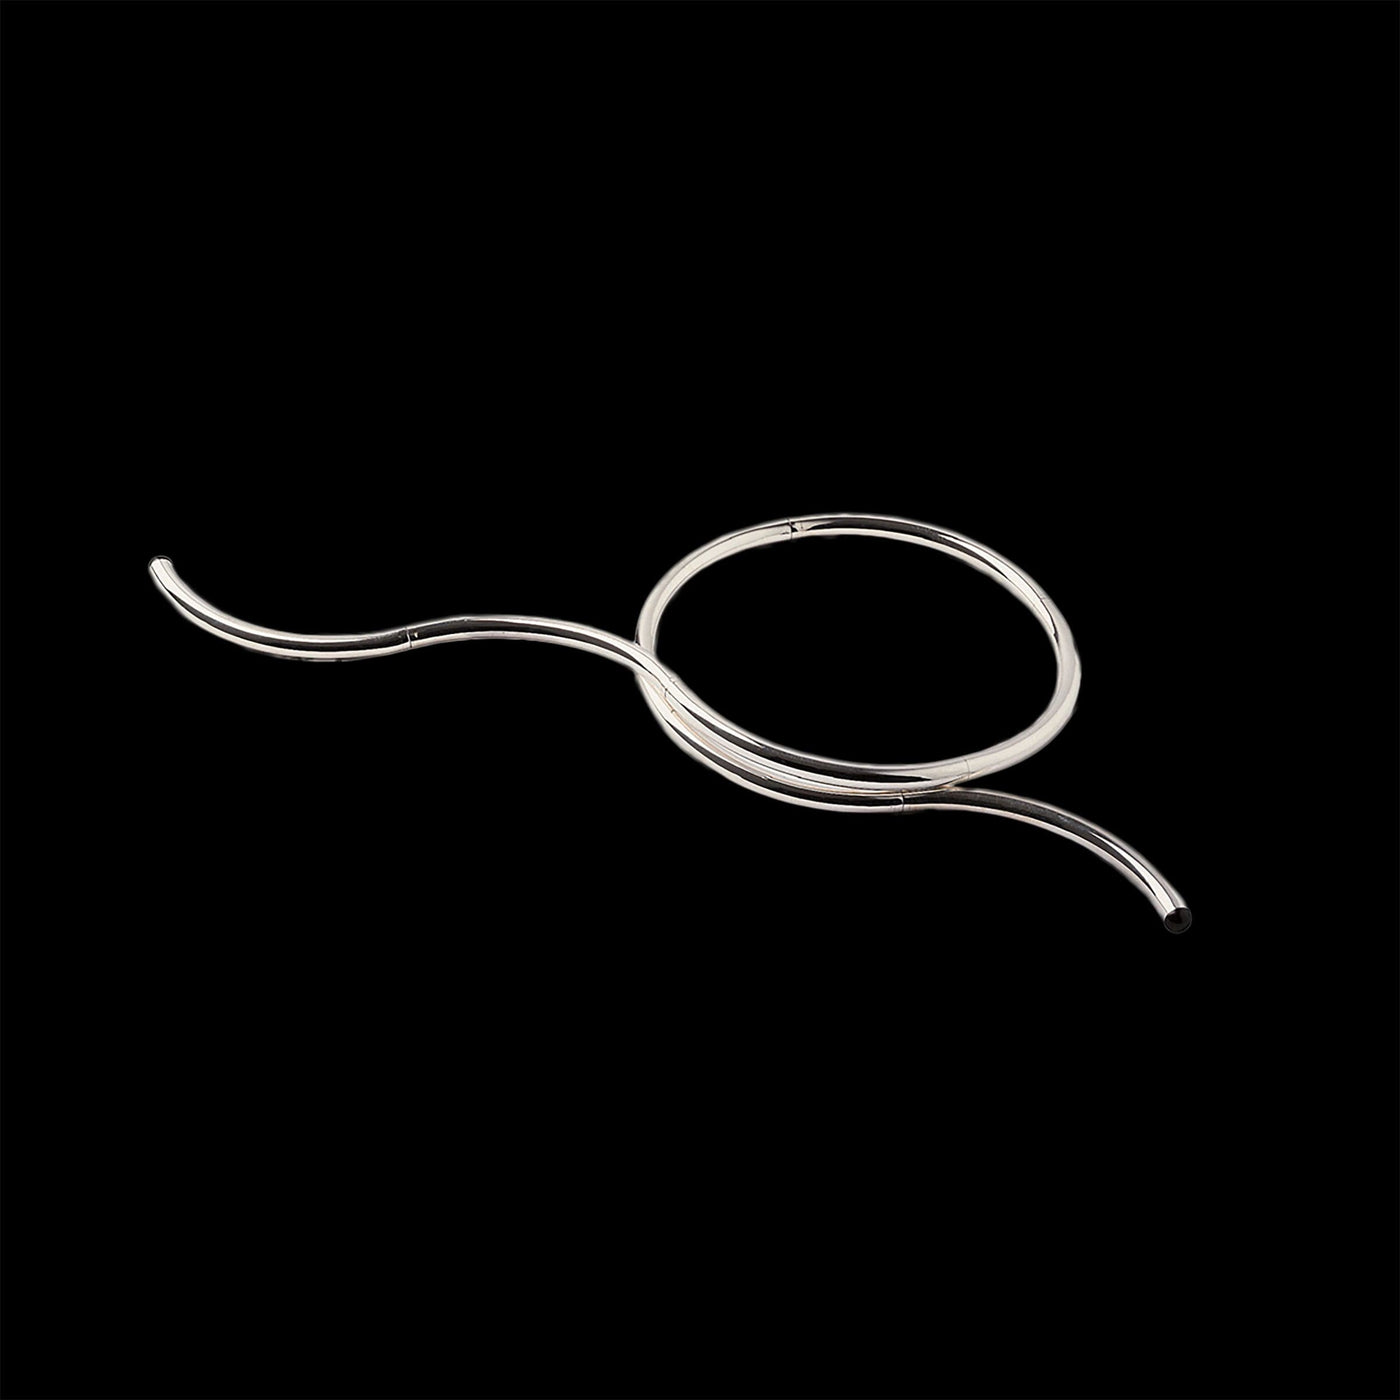 Silver Necklace SENZA FINE by Lella&Massimo Vignelli 09